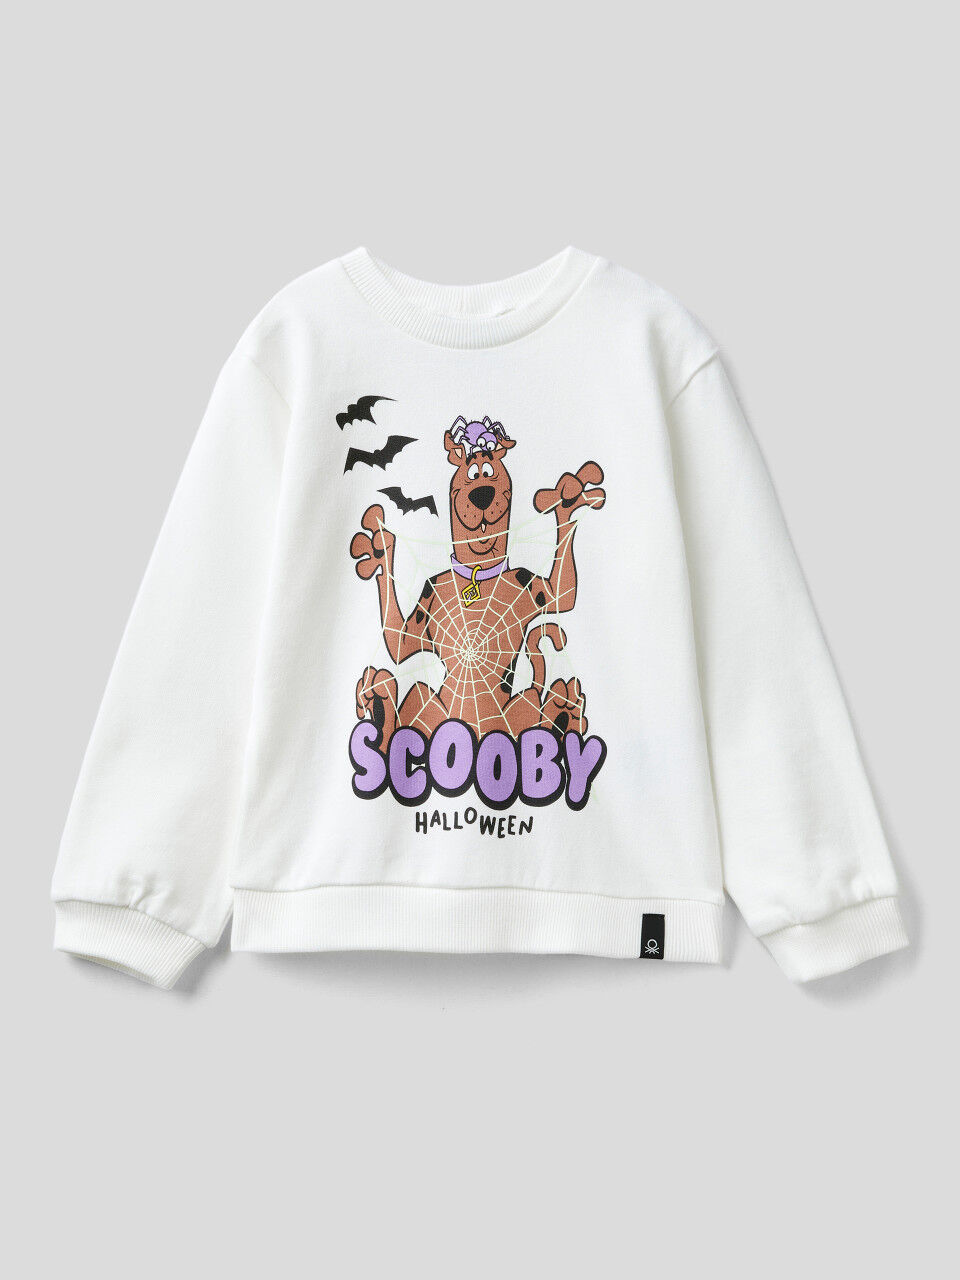 Scooby-Doo sweatshirt with glow-in-the-dark print